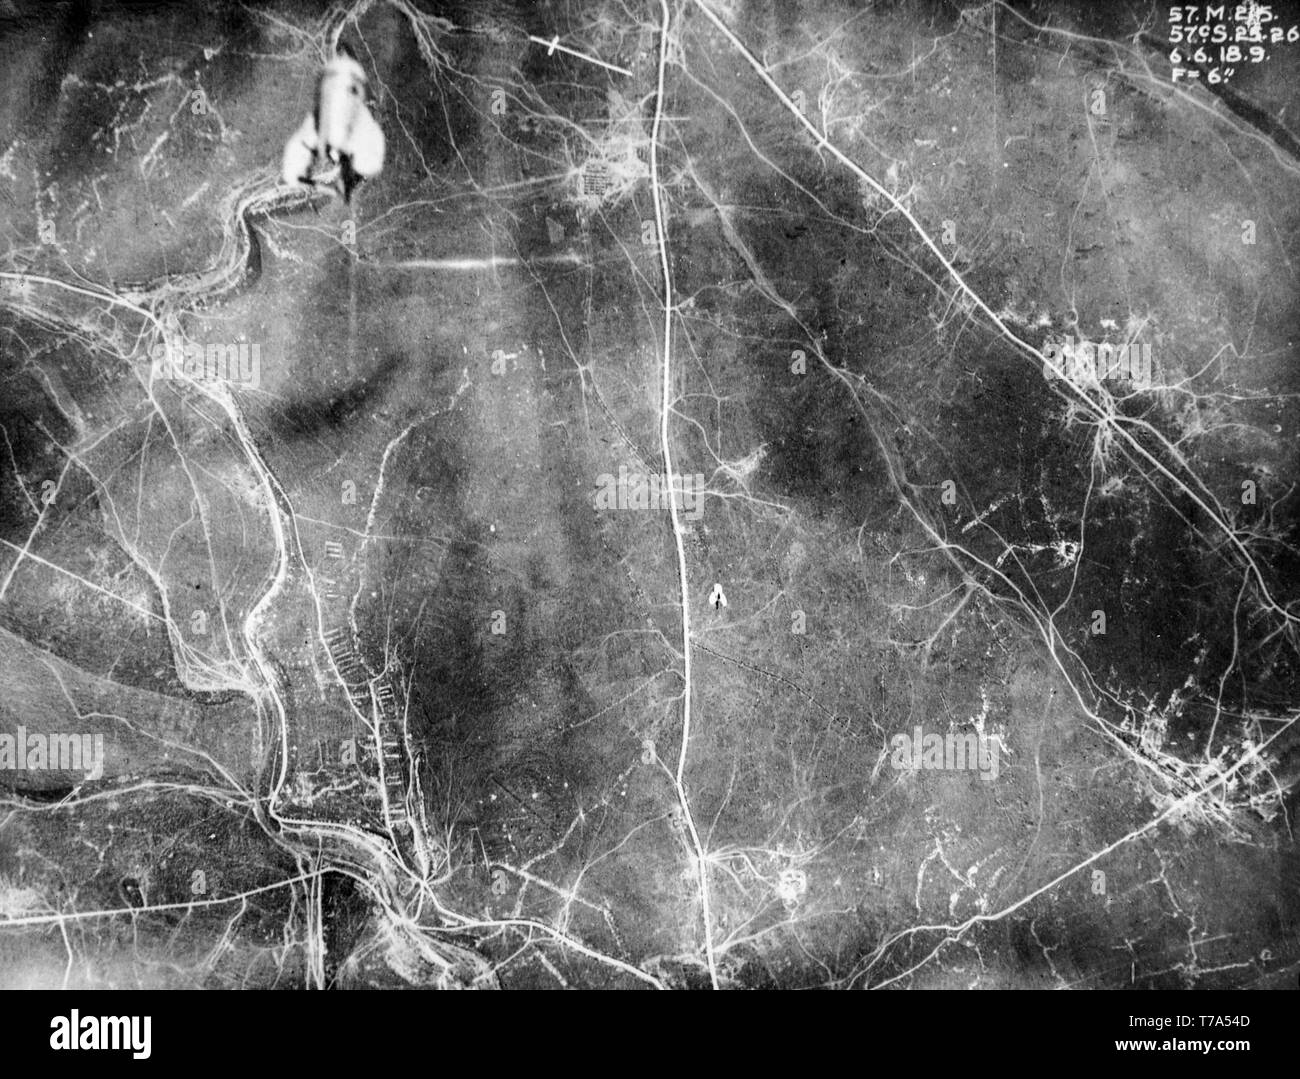 Une remarquable britannique aériennes en noir et blanc photographie prise le 6 juin 1916 pendant la Première Guerre mondiale, montrant clairement deux bombes larguées à partir d'avions sur des cibles au-dessus du nord de la France. Banque D'Images